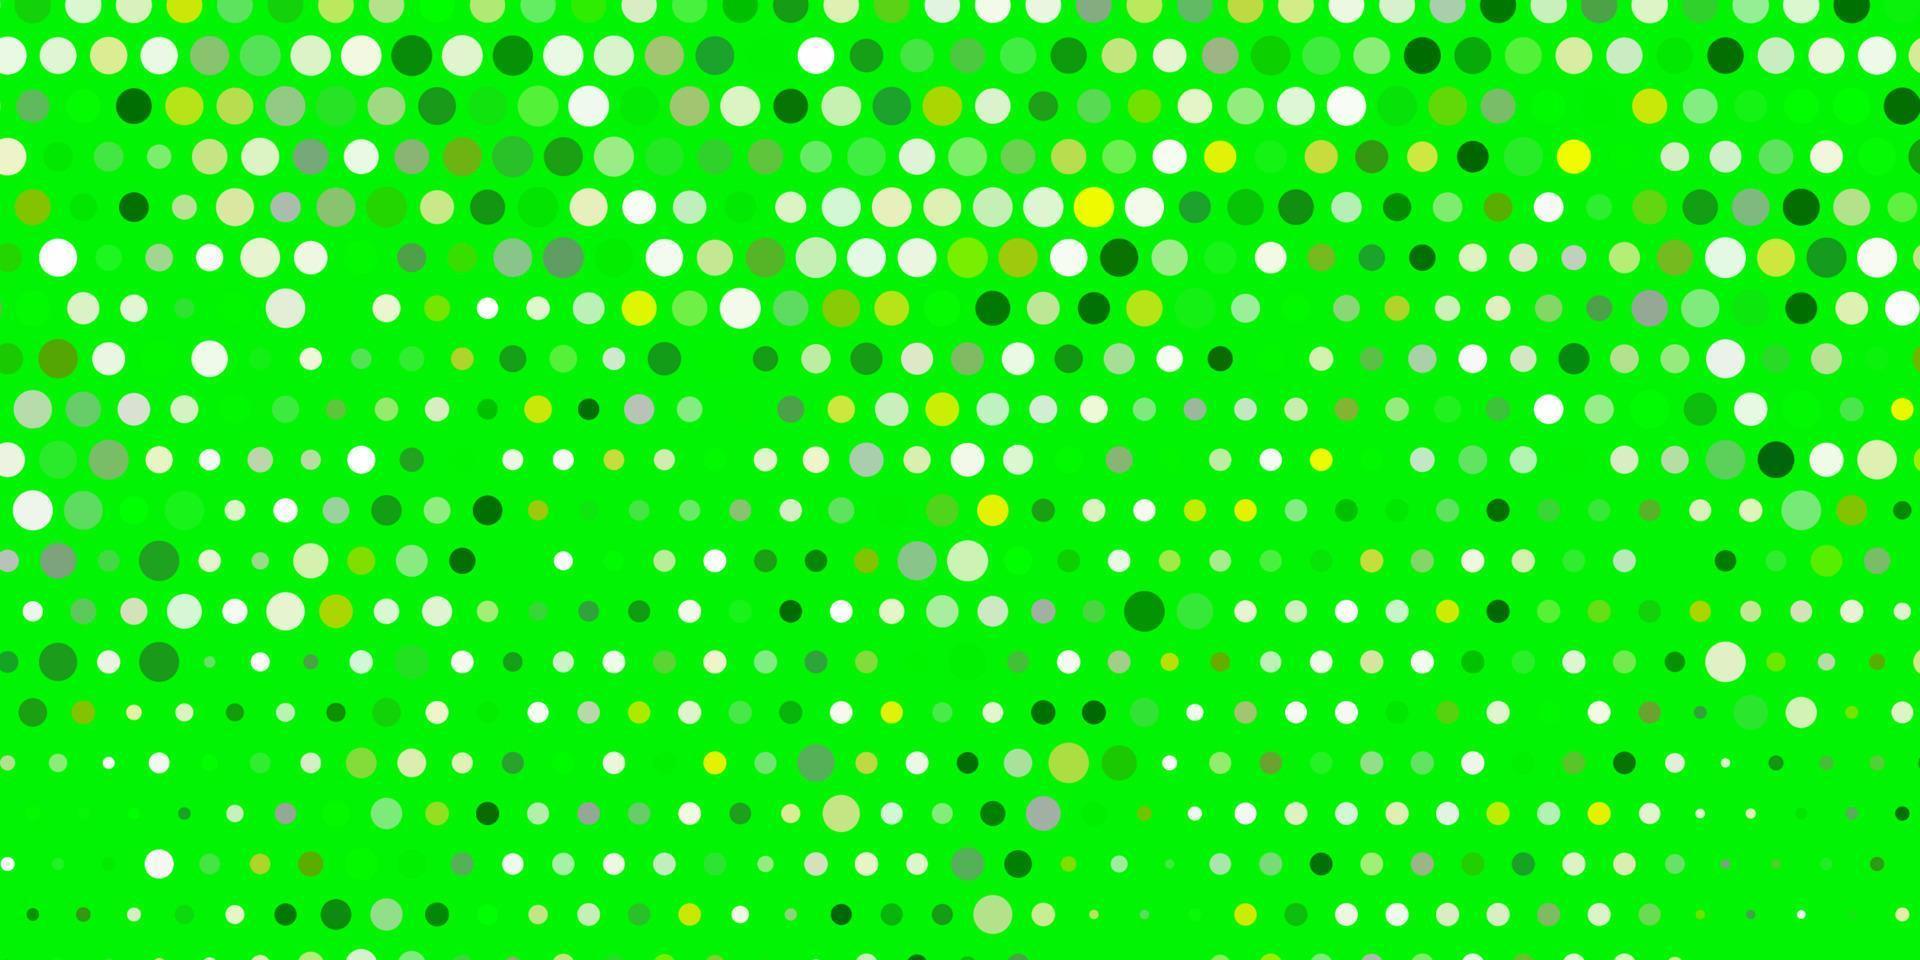 layout vettoriale verde chiaro, giallo con forme circolari.